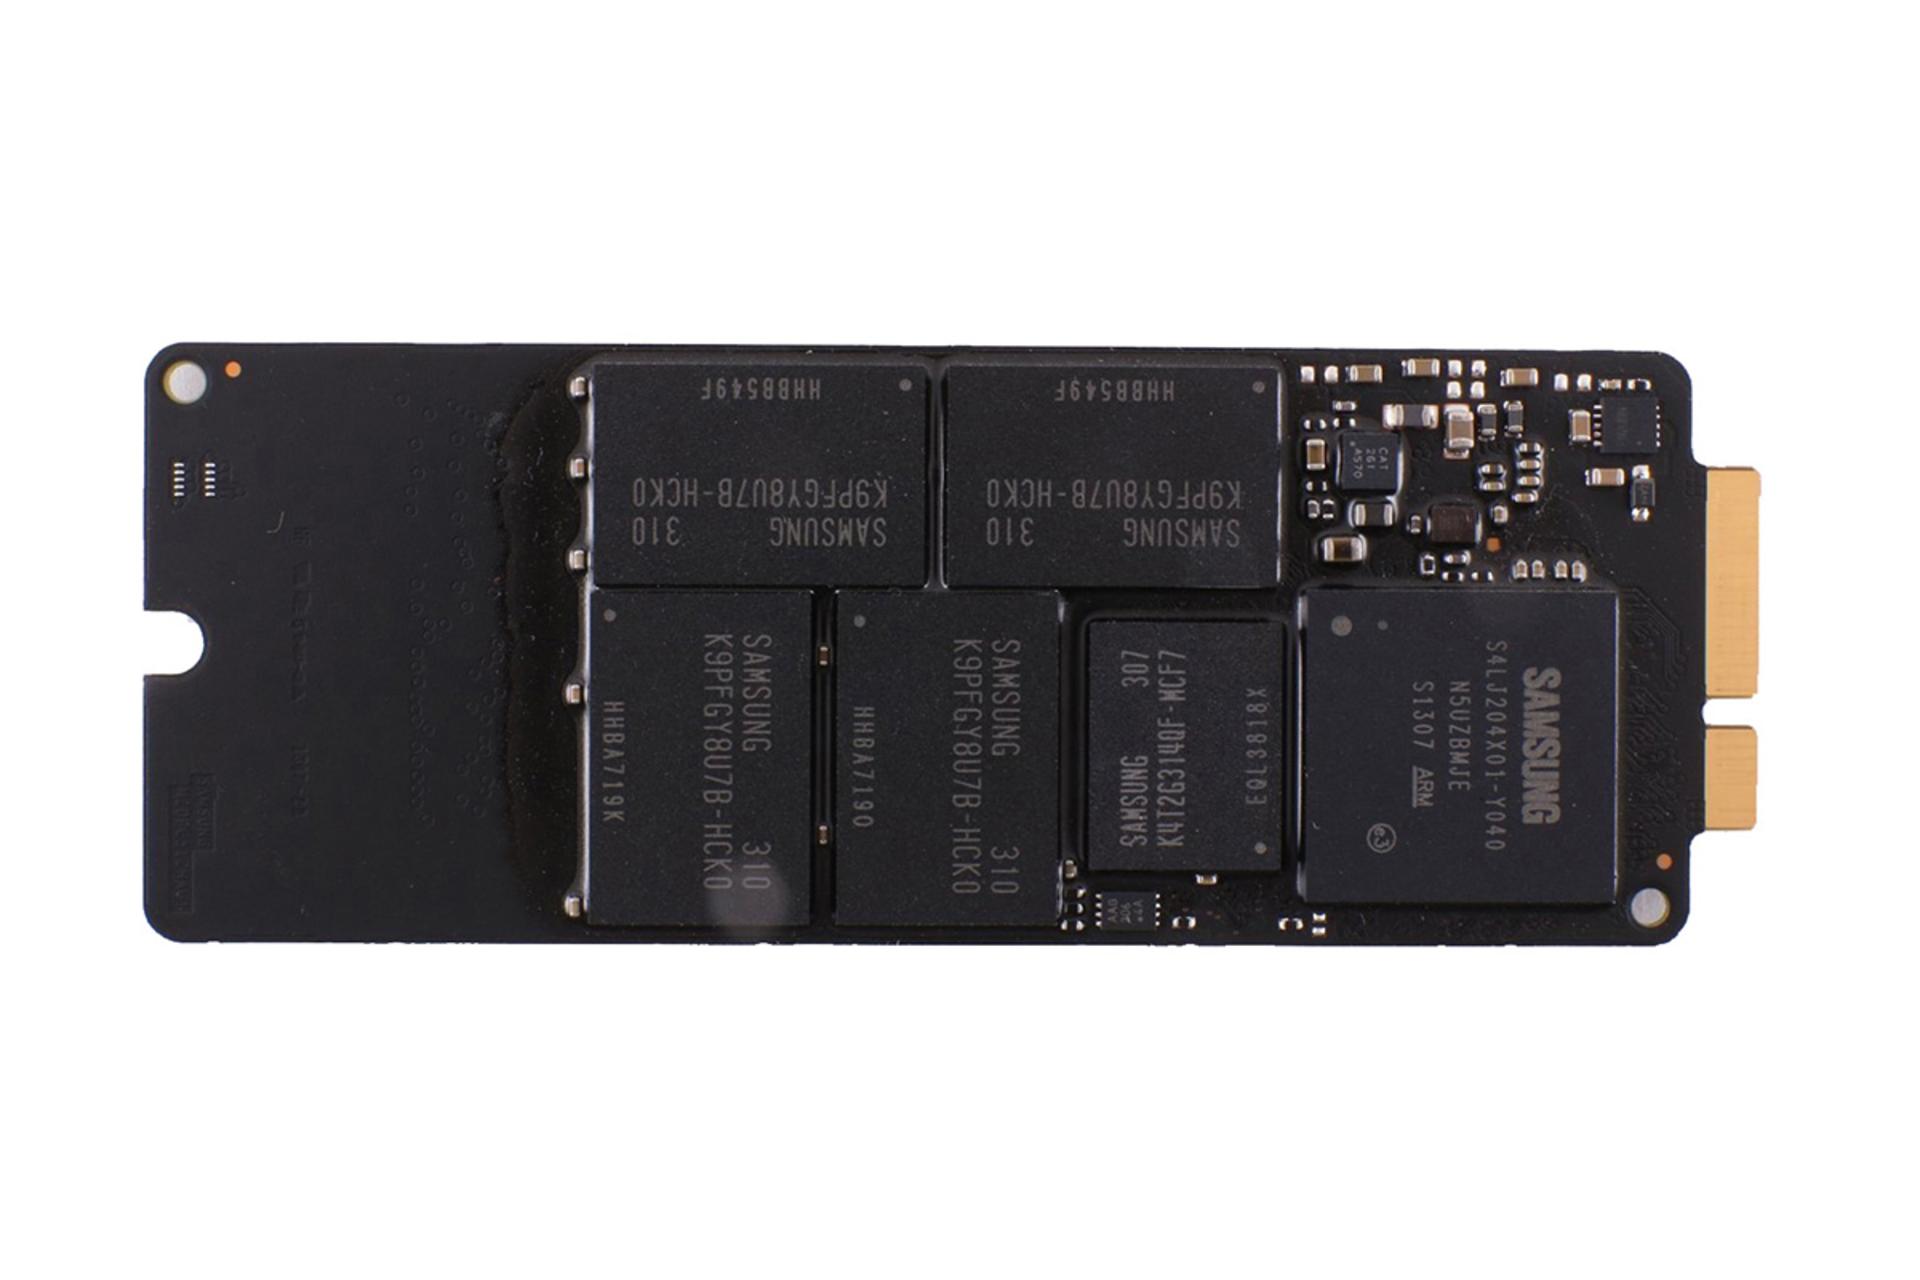 حافظه SSD سامسونگ MZ-DPC256T/A02 با رابط mSATA